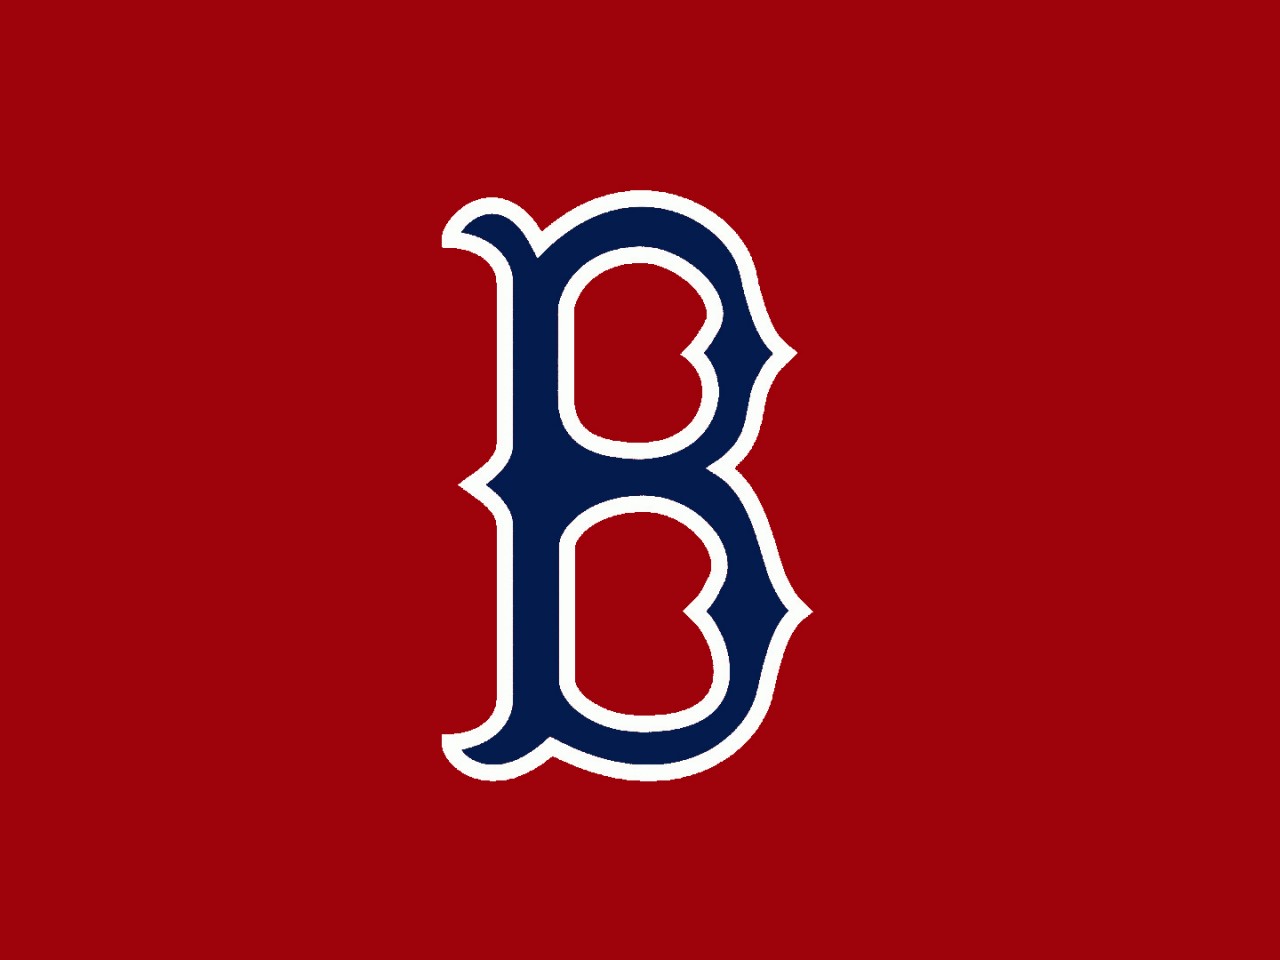 [75+] Boston Red Sox Wallpapers | WallpaperSafari